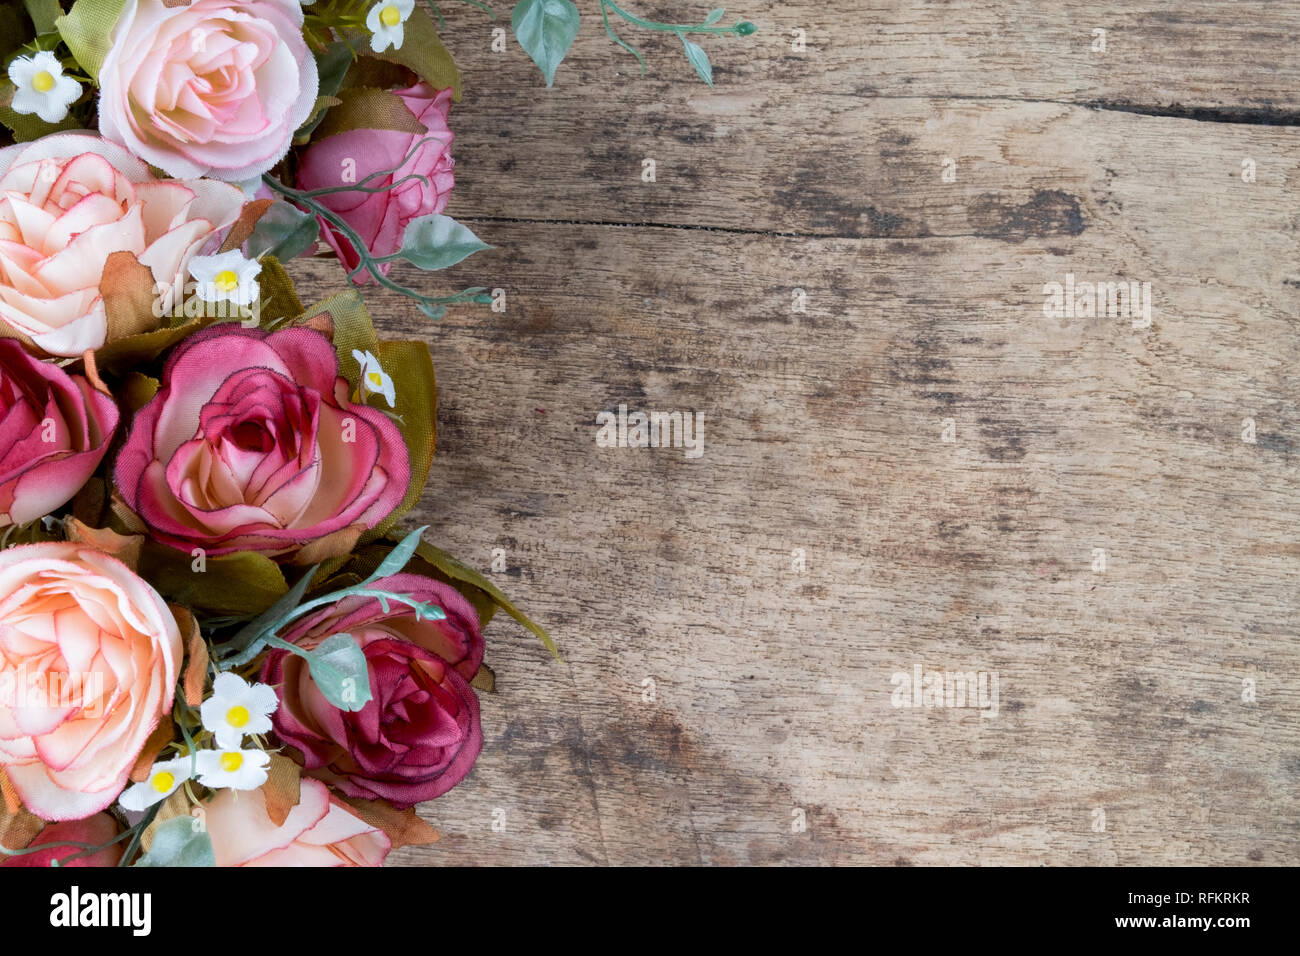 Hãy cùng nhau khám phá không gian sao chép với hoa hồng cổ điển trên nền gỗ sồi thô. Bộ ảnh này sẽ đưa bạn đến thế giới hoa hồng cổ điển, nơi bạn có thể tìm thấy sự thanh lịch và phong cách cổ điển cho phòng làm việc của mình.